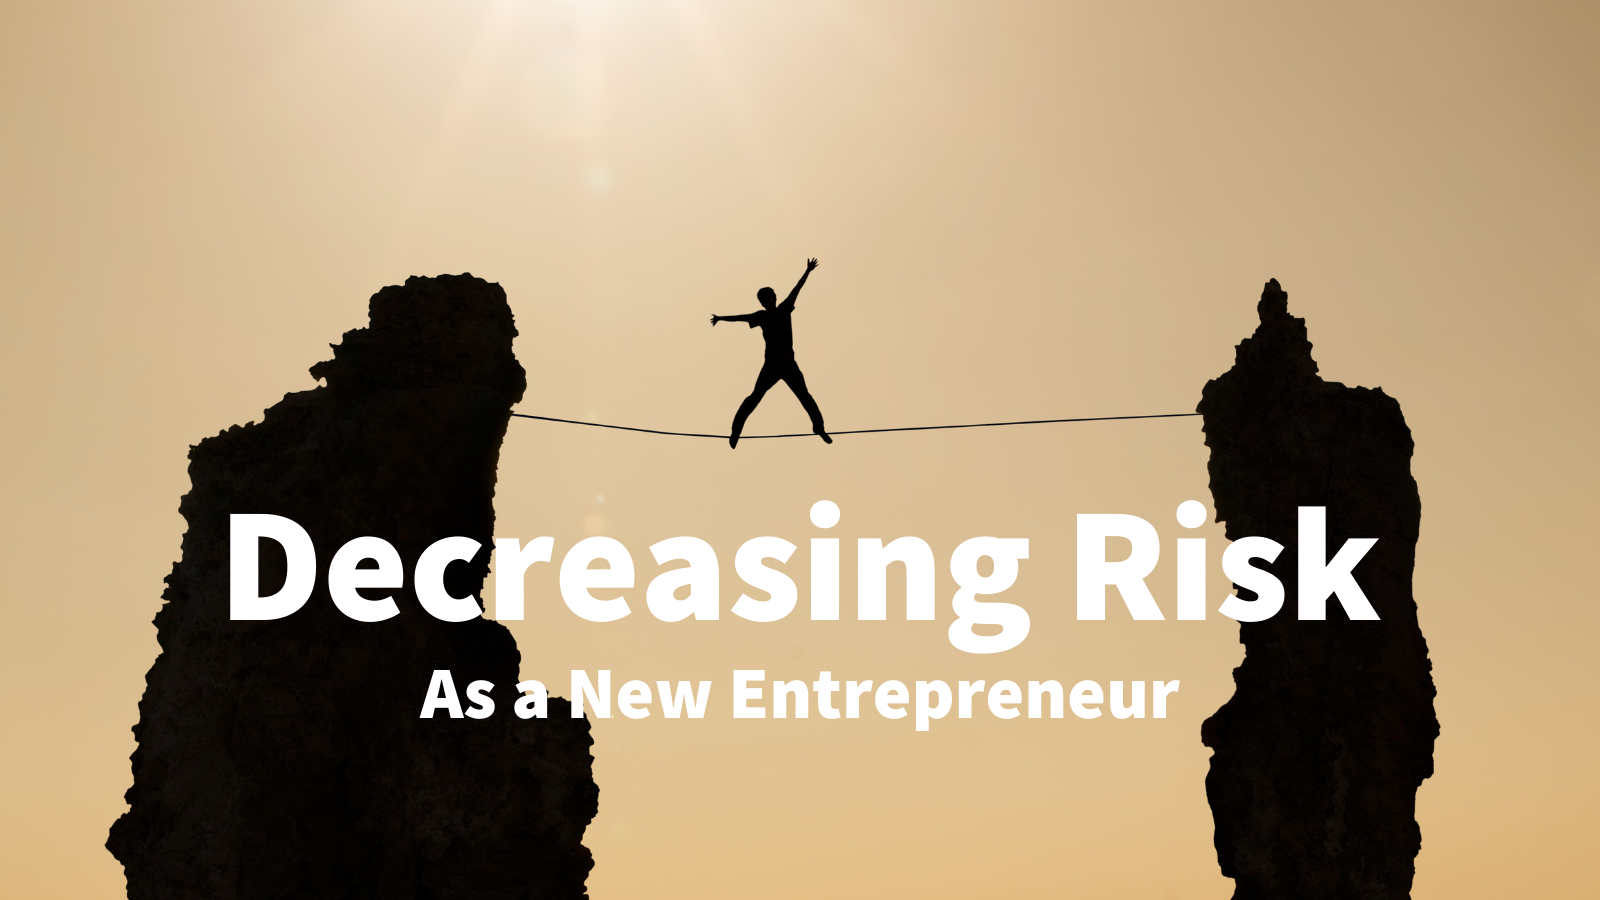 Q&A: Decreasing Risk as an Entrepreneur